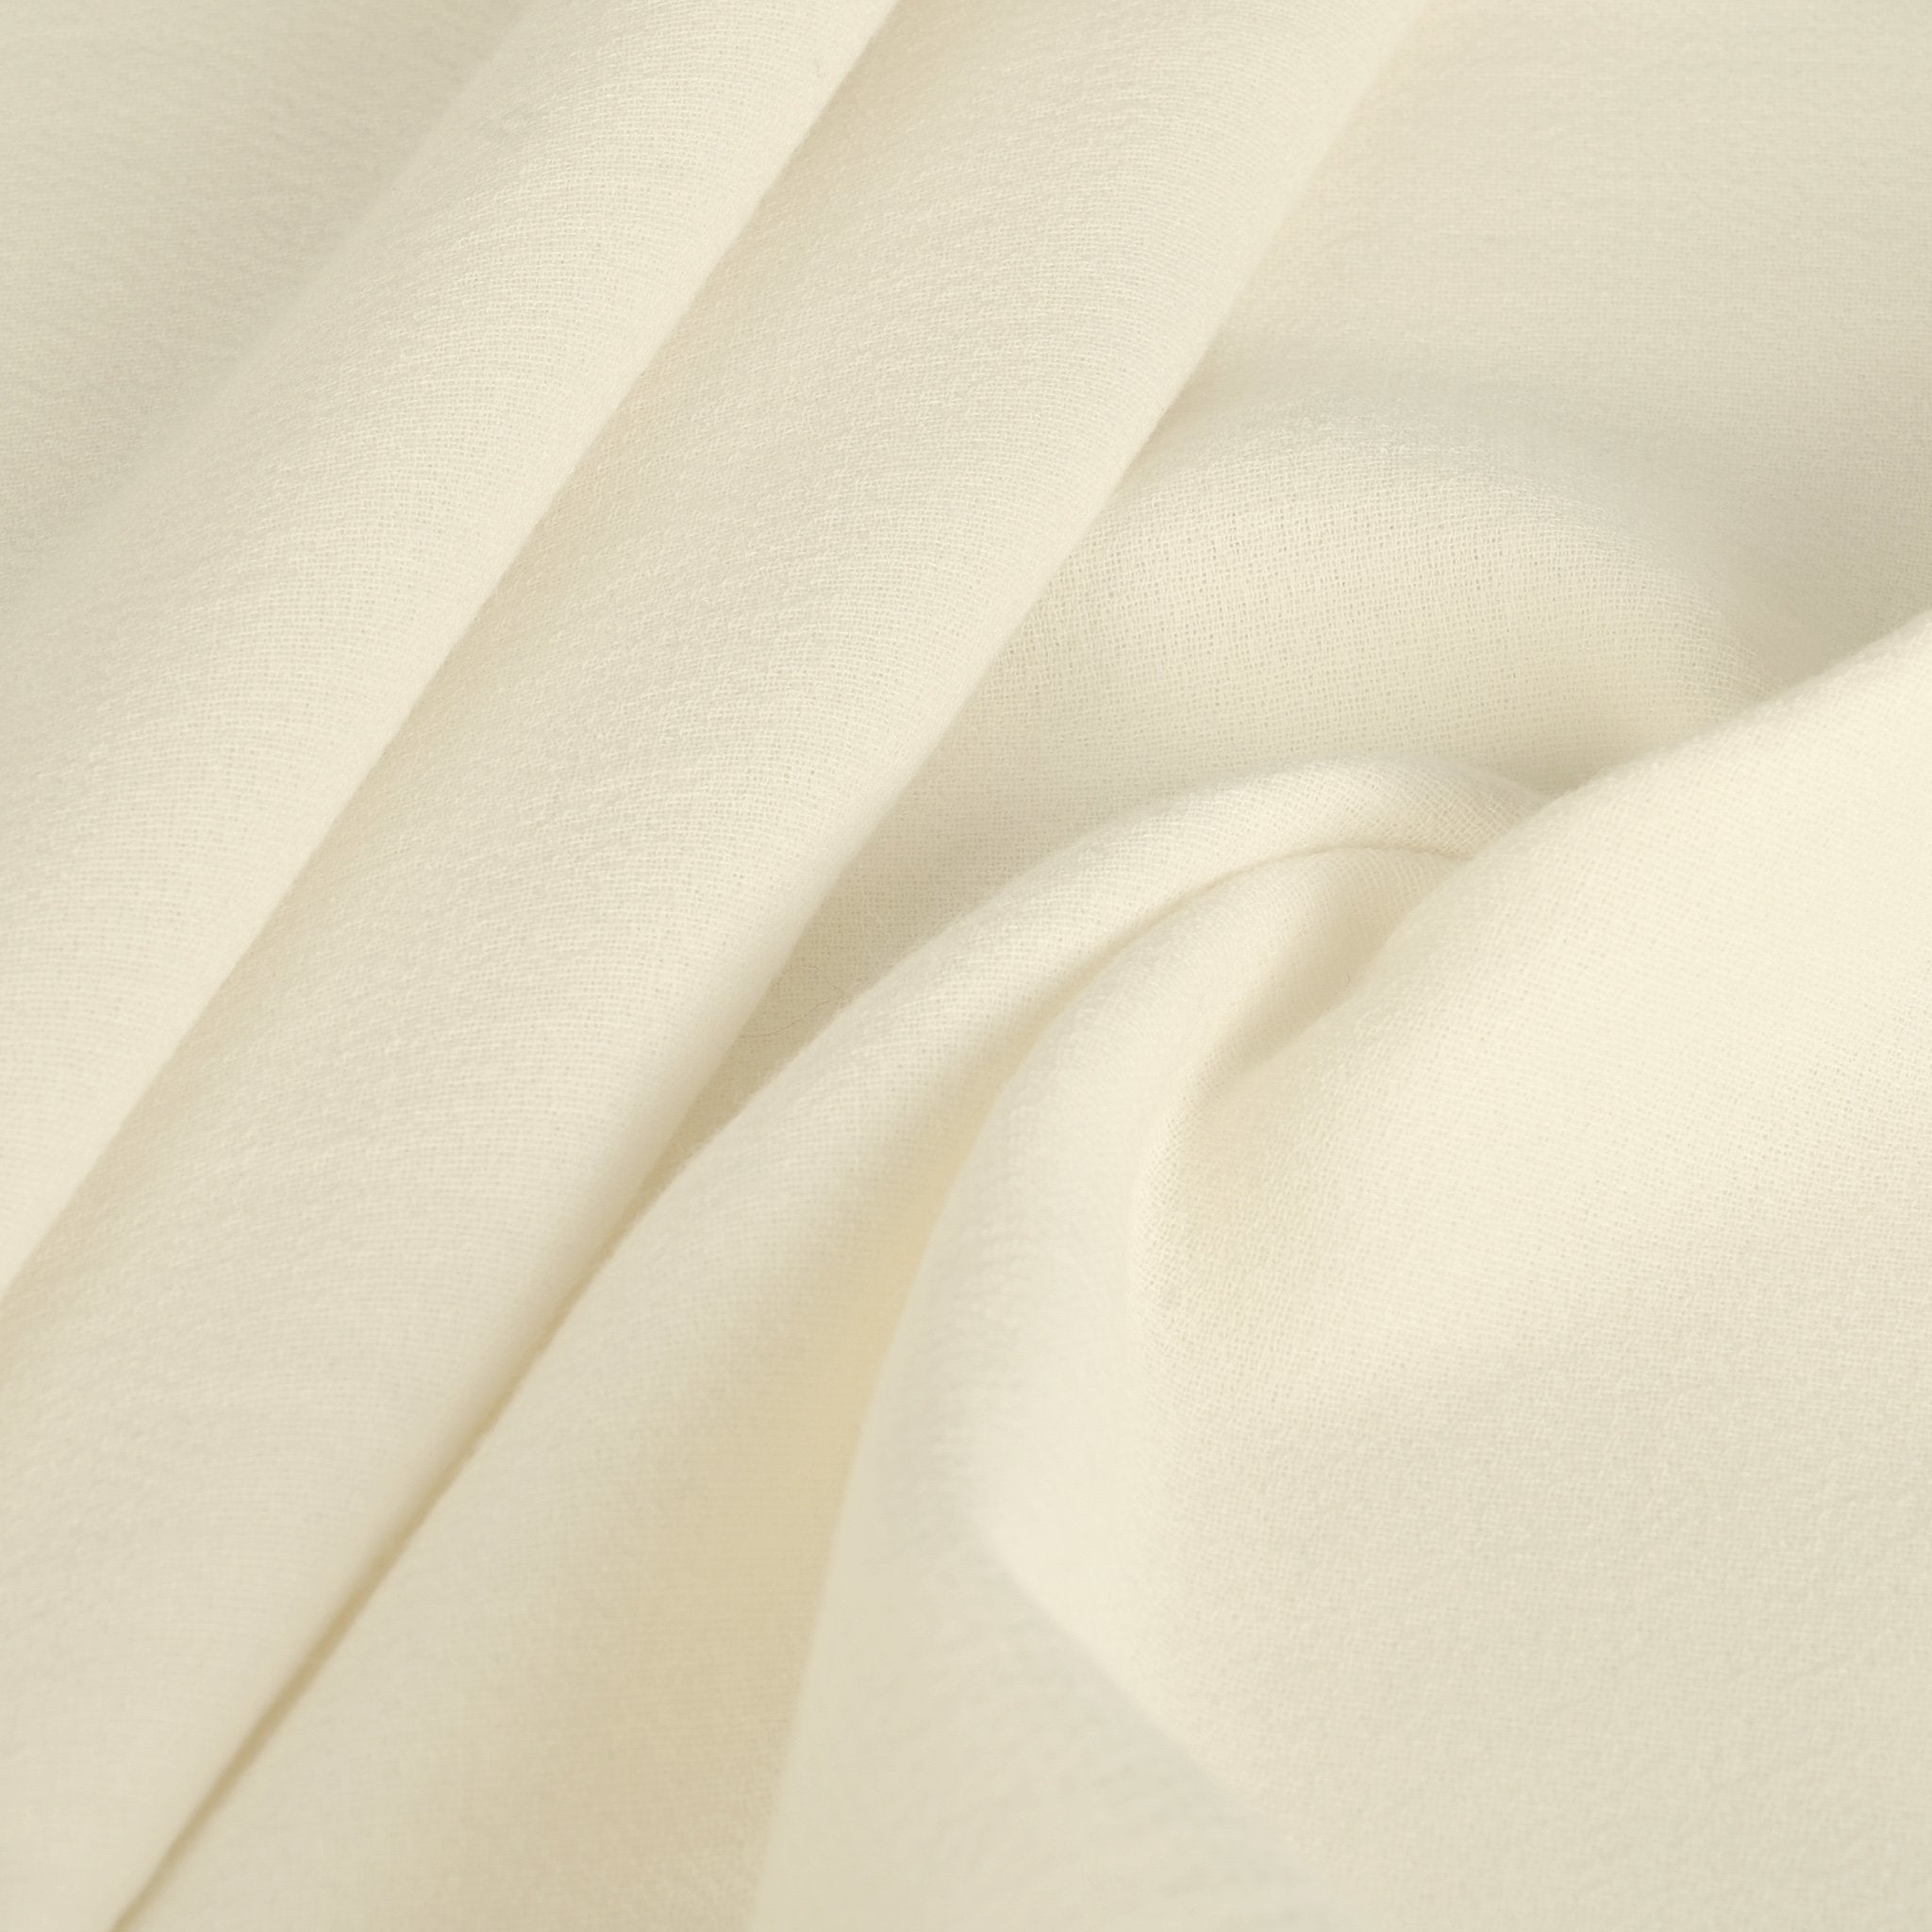 Cream Crepe Fabric 3537